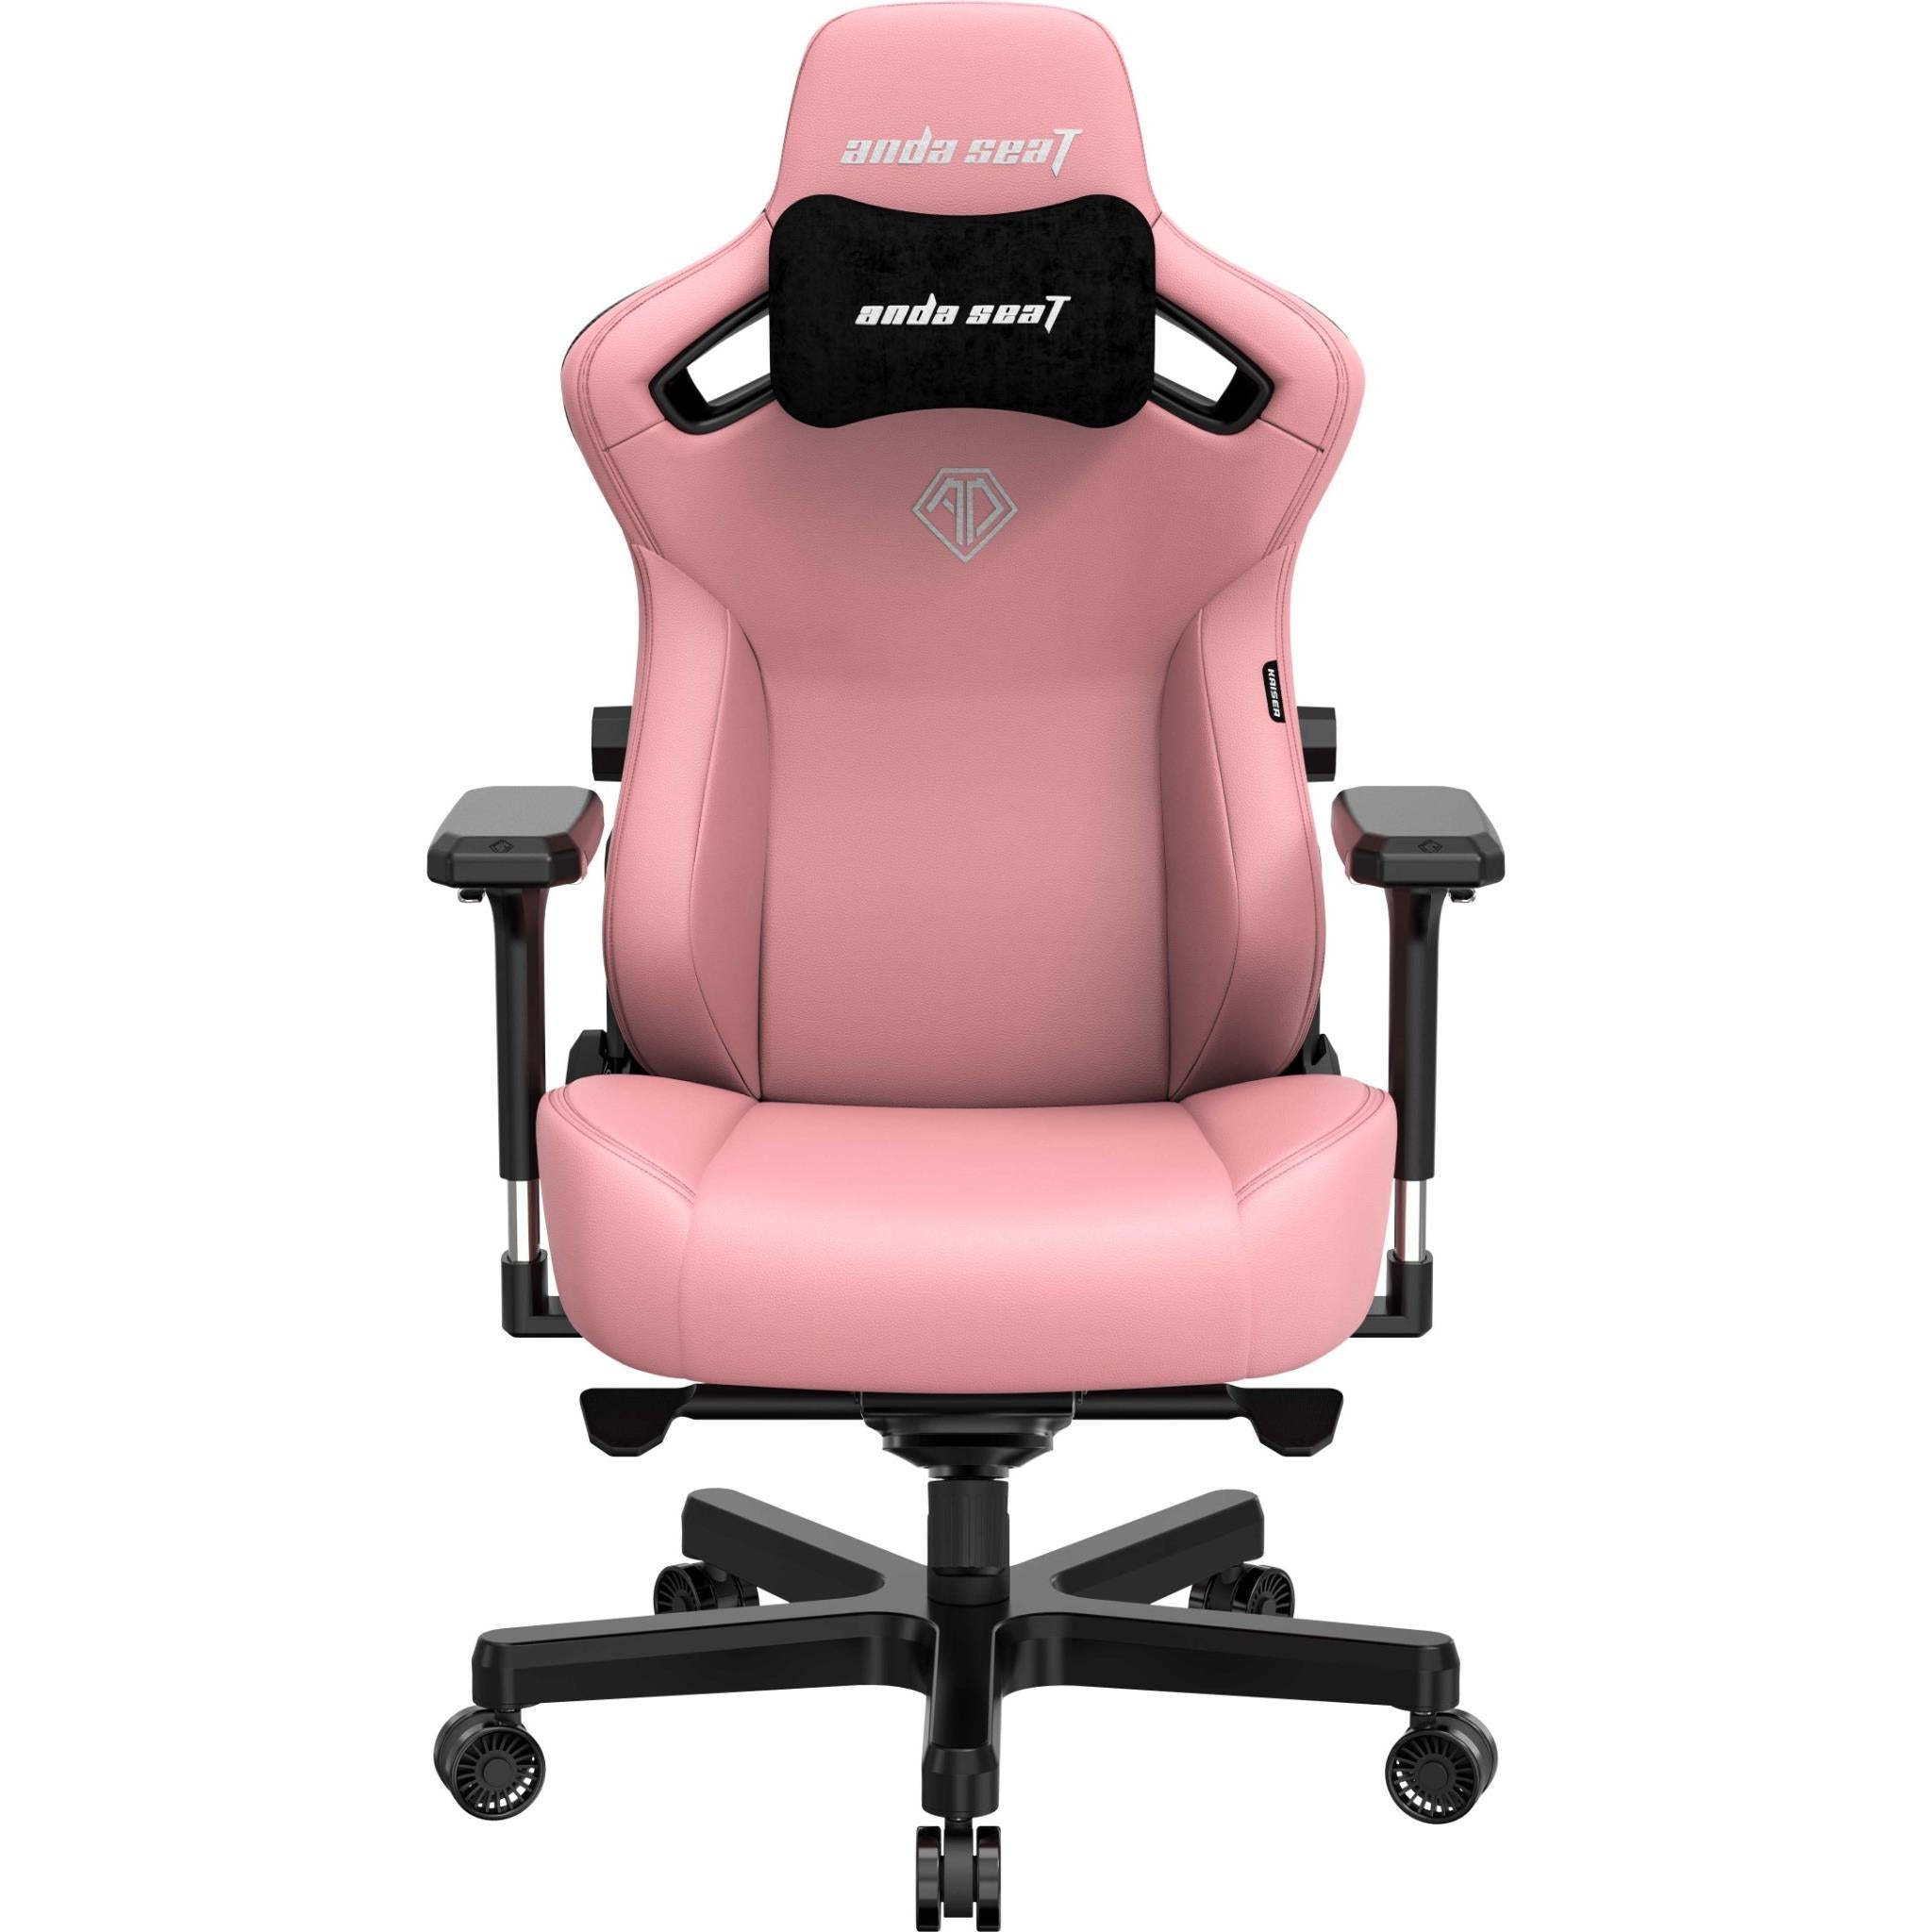 anda seat kaiser 3 series premium gaming chair pink (xl)